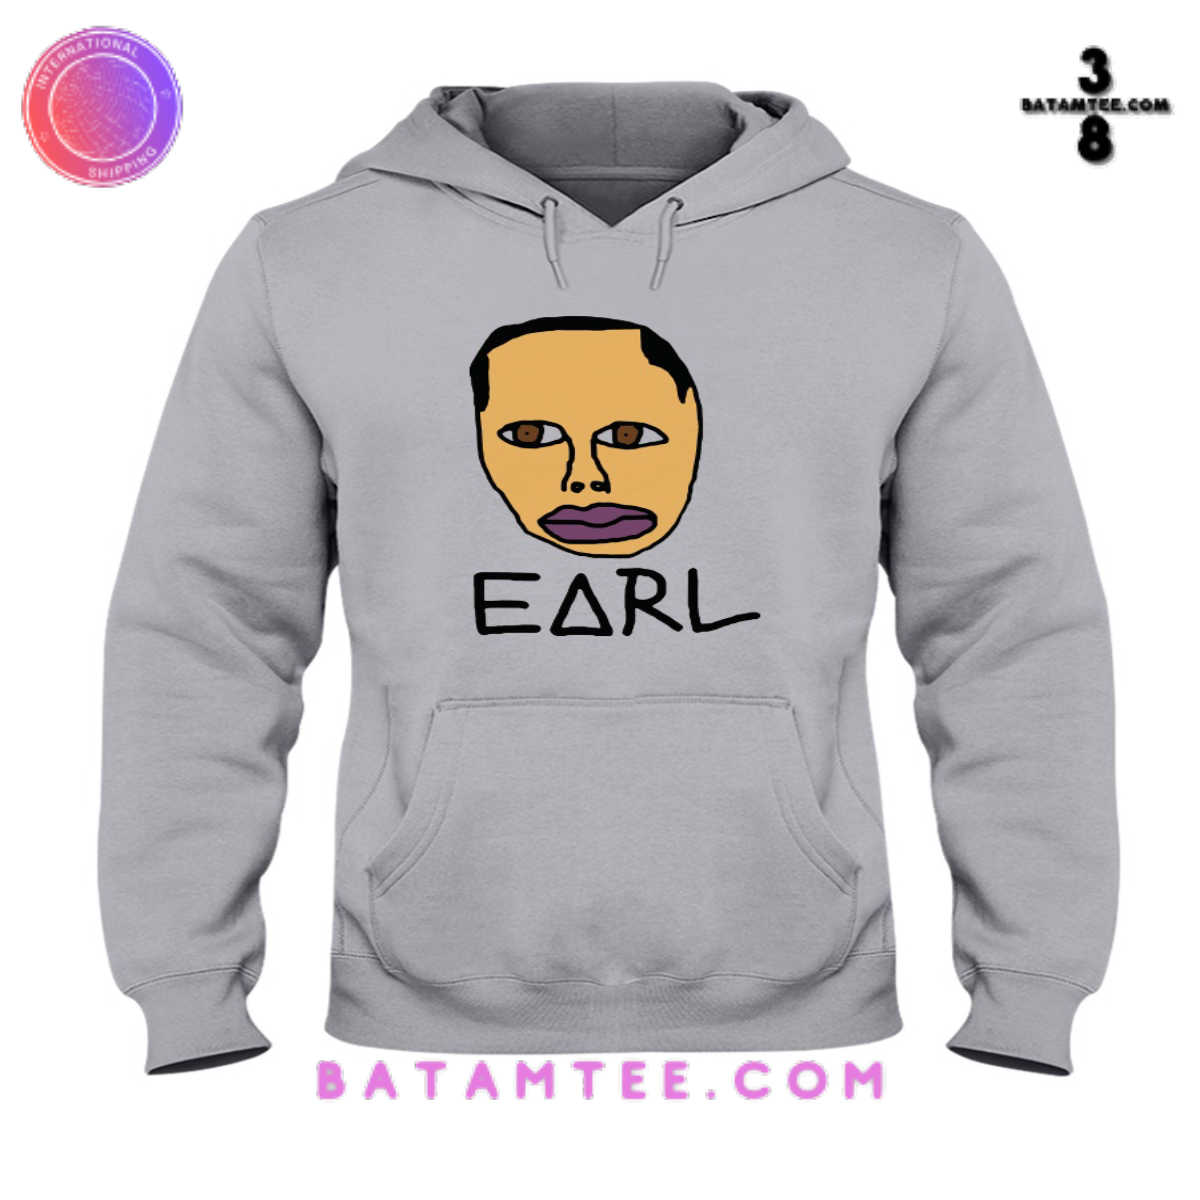 Earl Sweatshirt Sweater Grey Hoodie